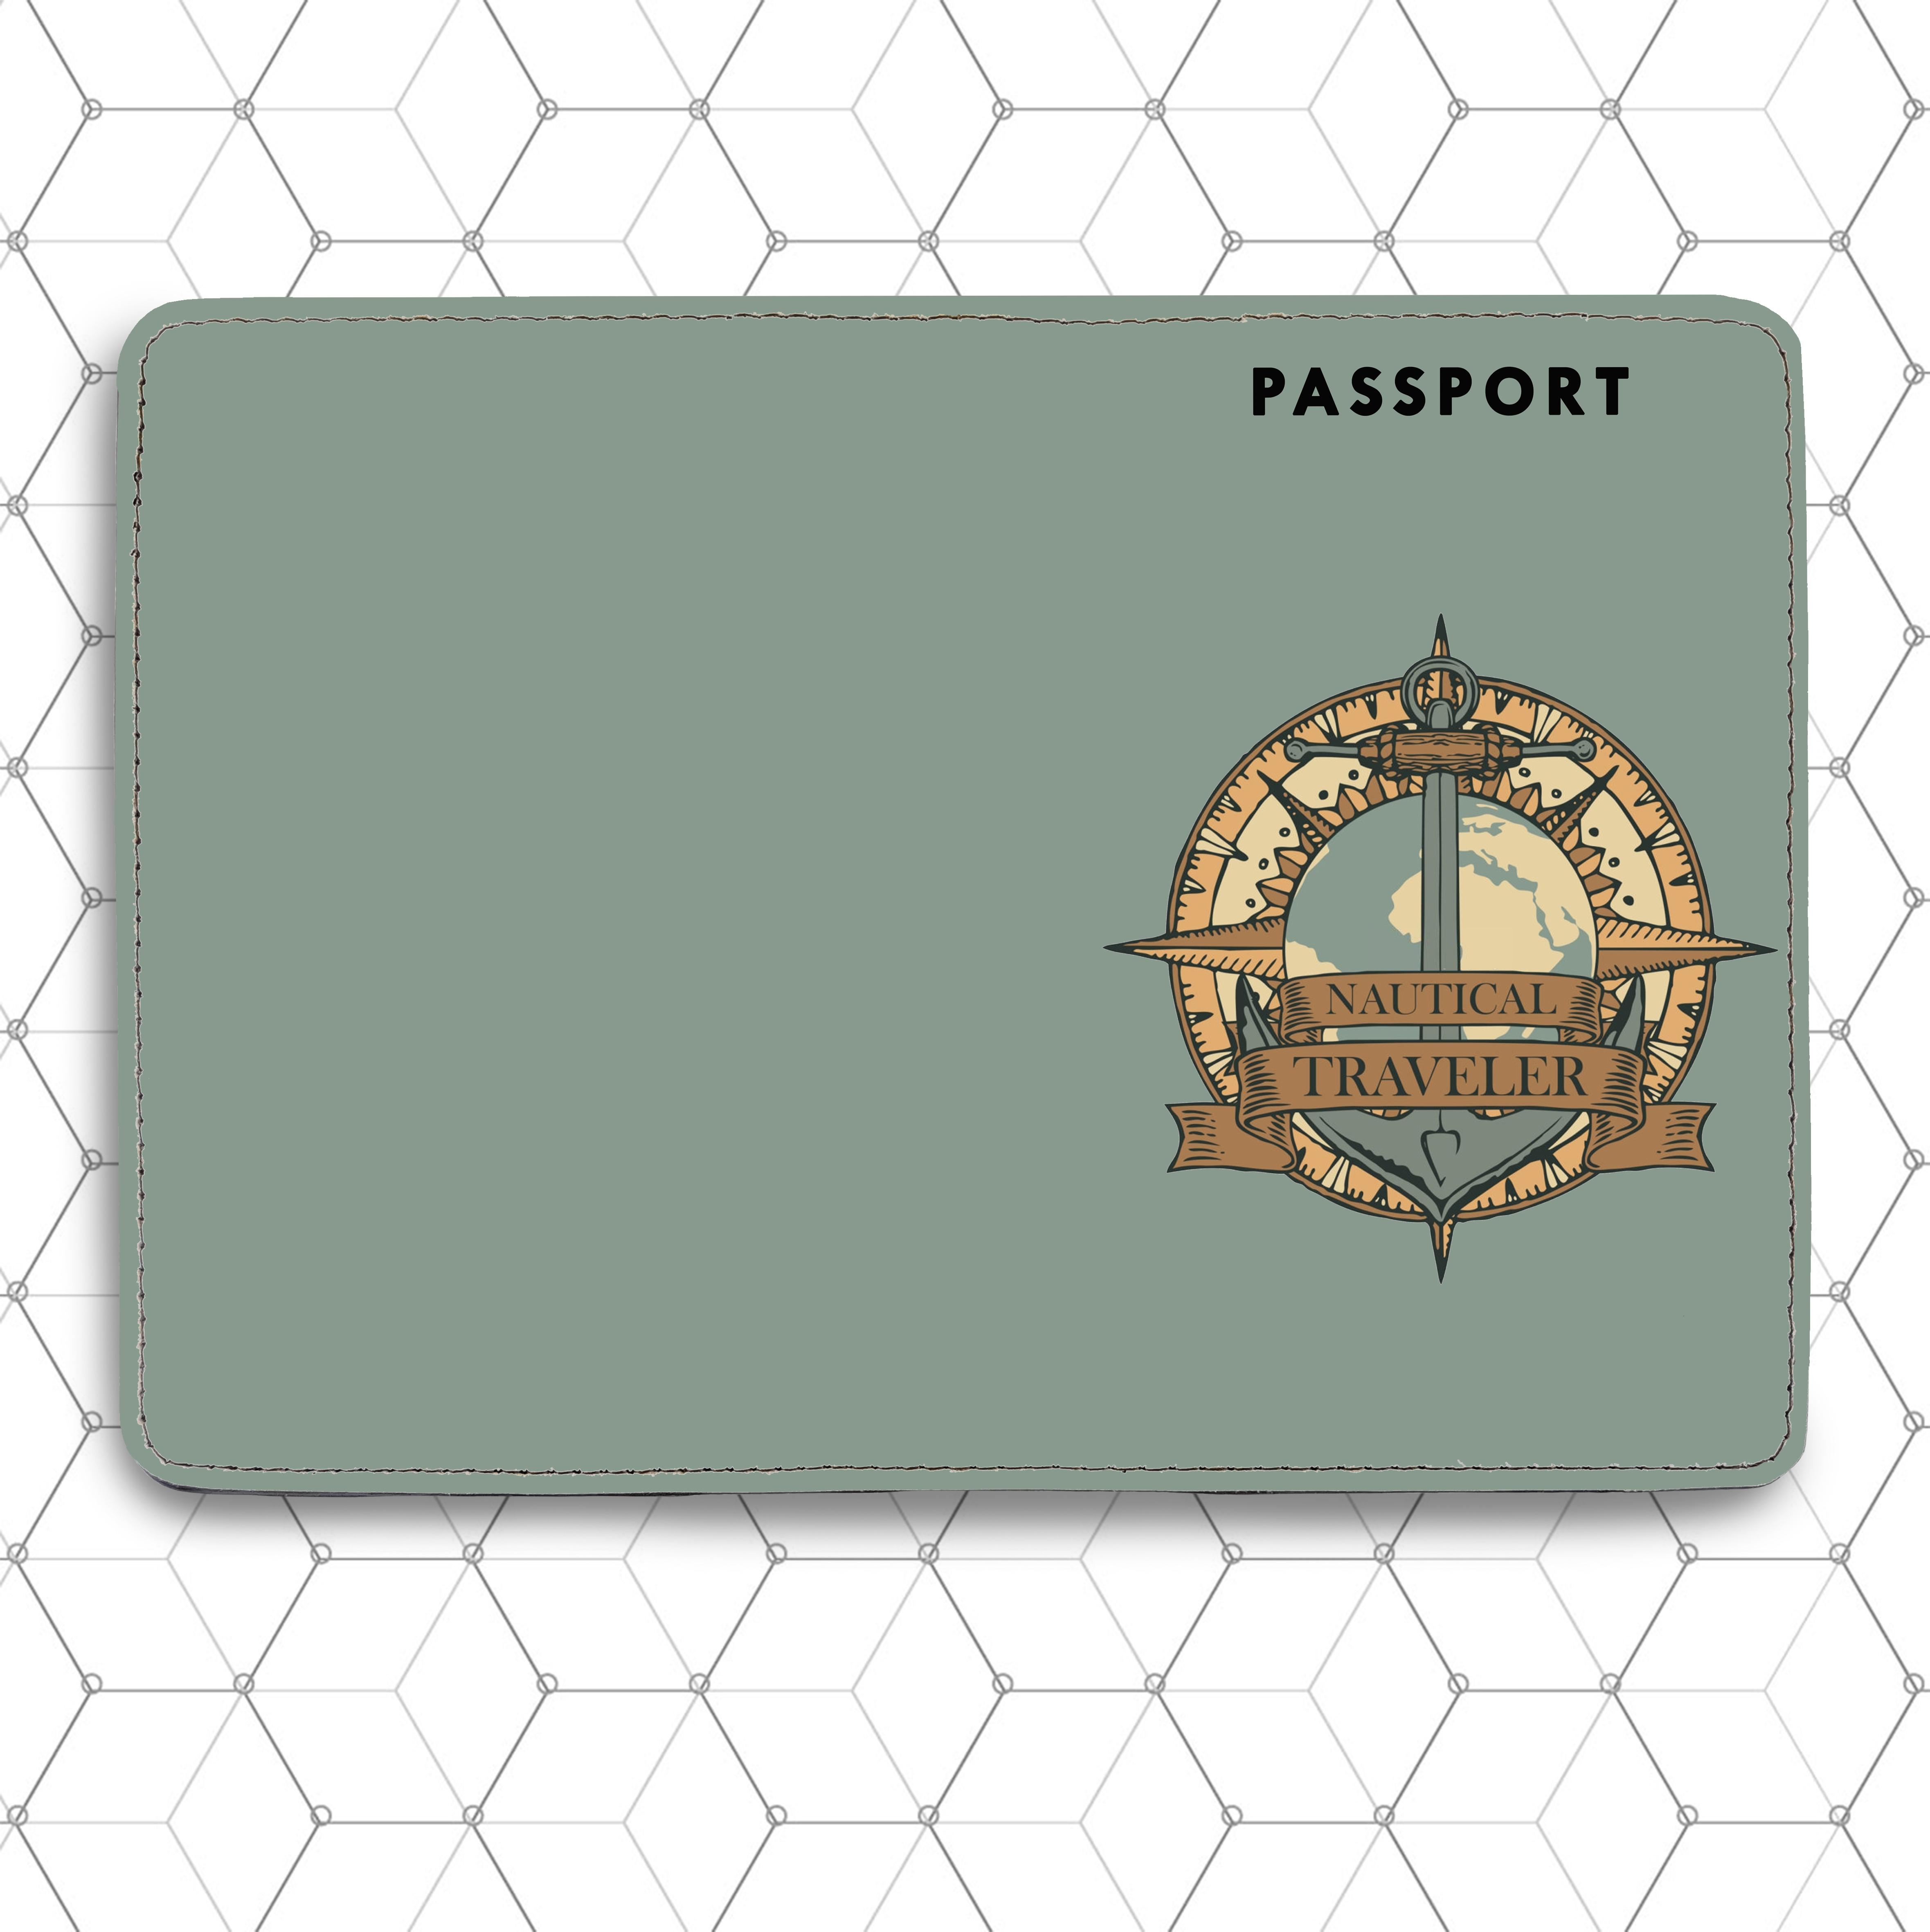 Ví Passport Hoạ Tiết MỎ NEO - ANCHOR - Passport Cover Holder - Bao Da Hộ Chiếu Du Lịch Thời Trang - Tiện Lợi - PPT189